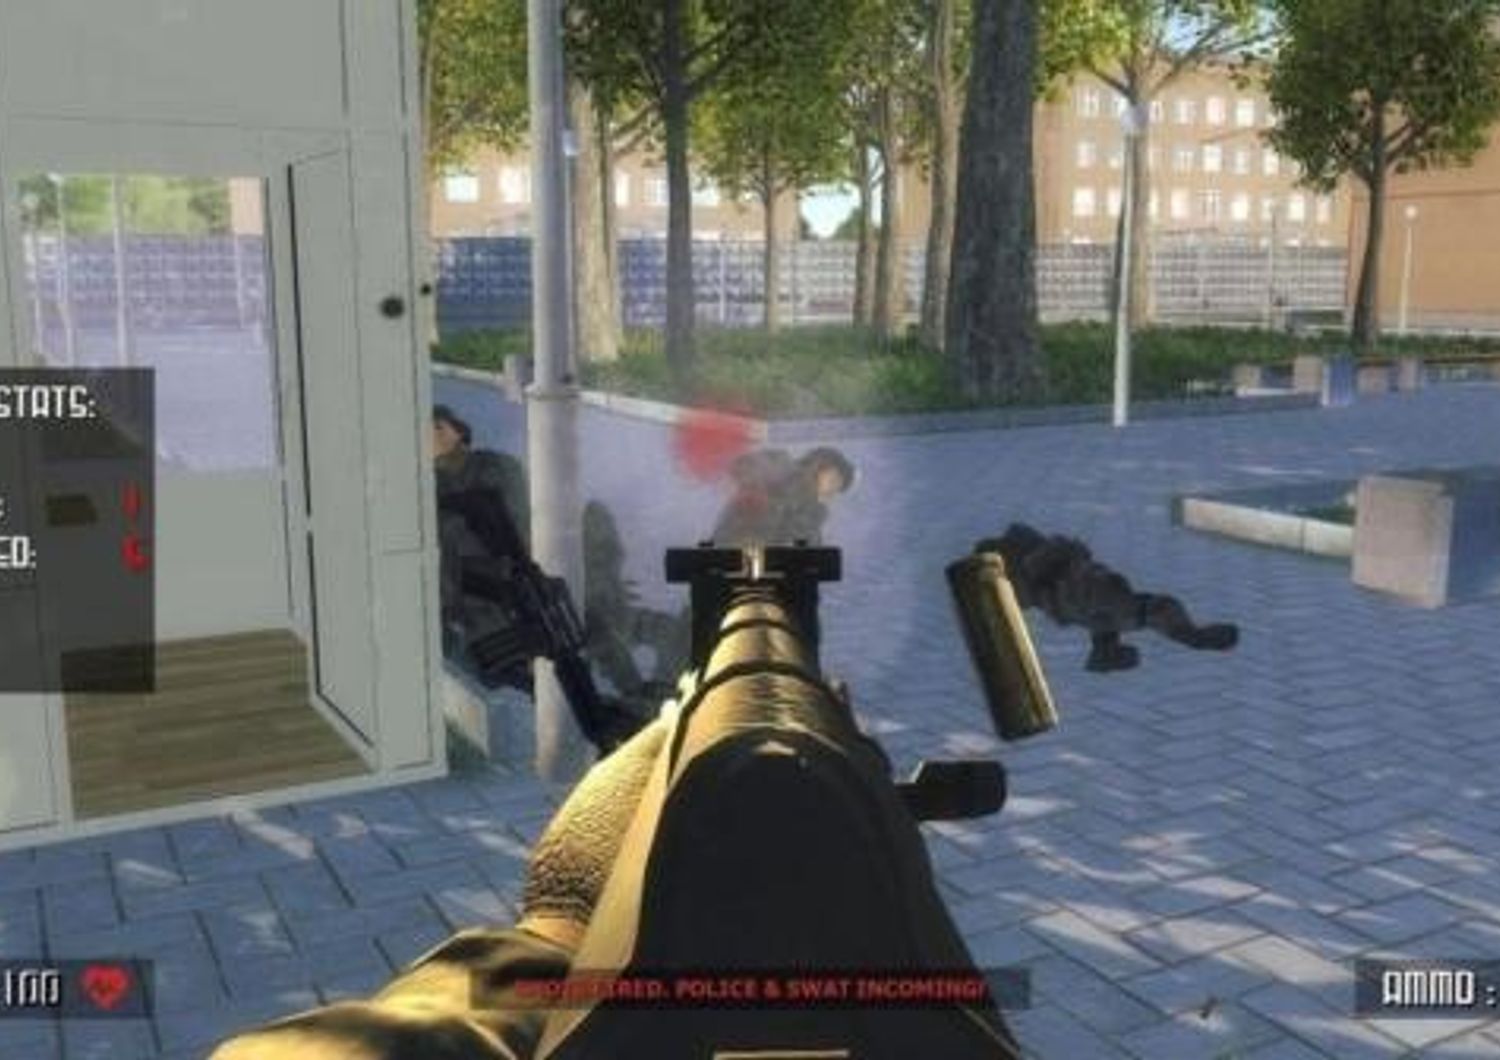 In America vogliono lanciare un videogioco che permette di sparare all&rsquo;interno di una scuola